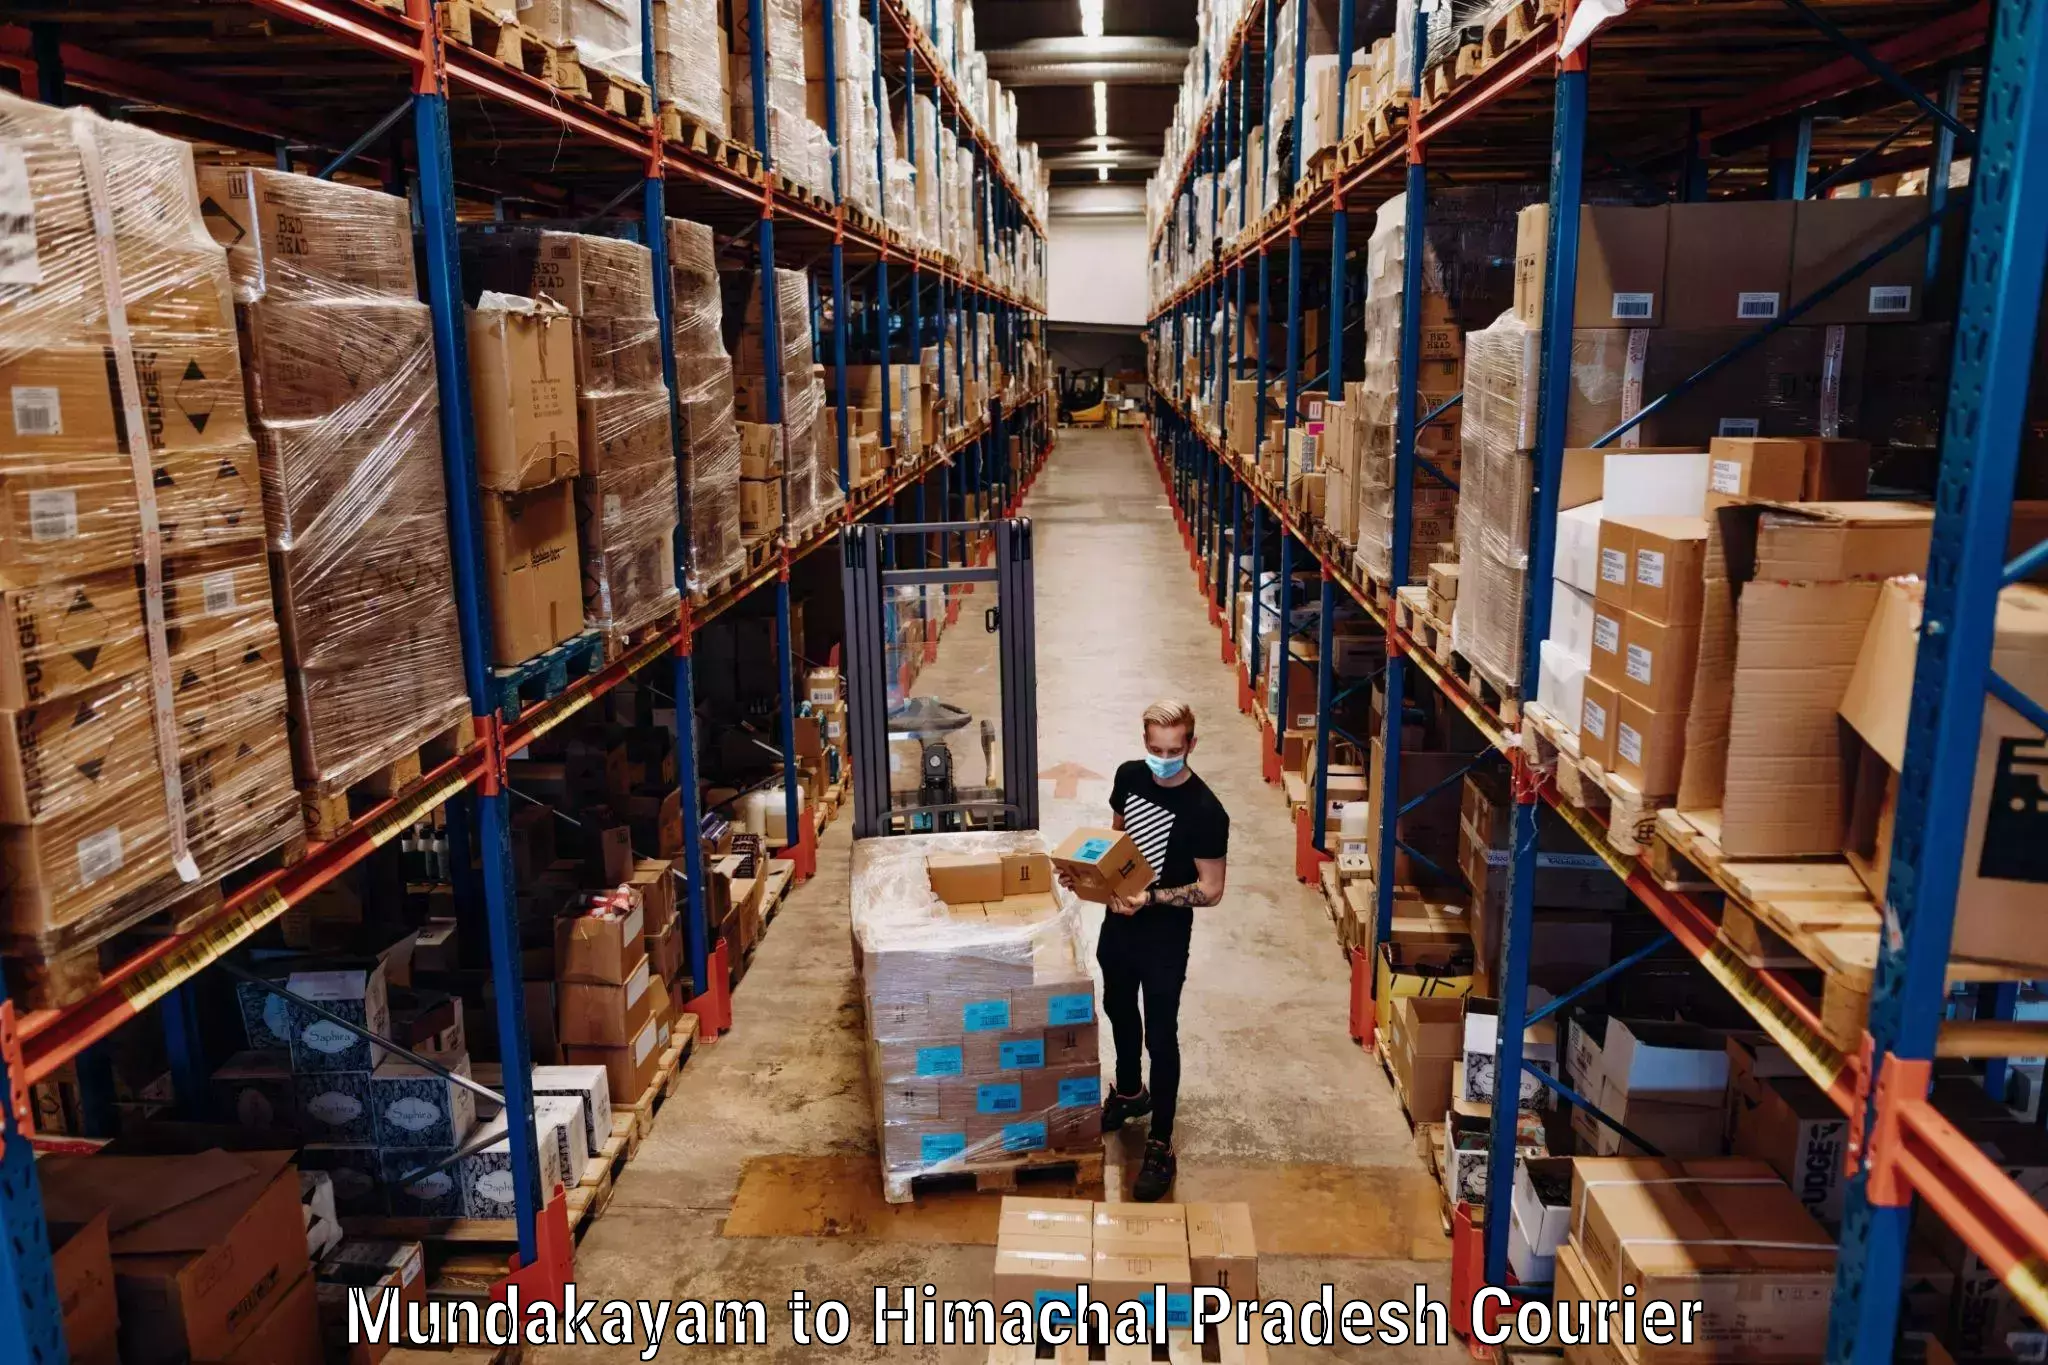 Luggage shipping specialists Mundakayam to Dheera